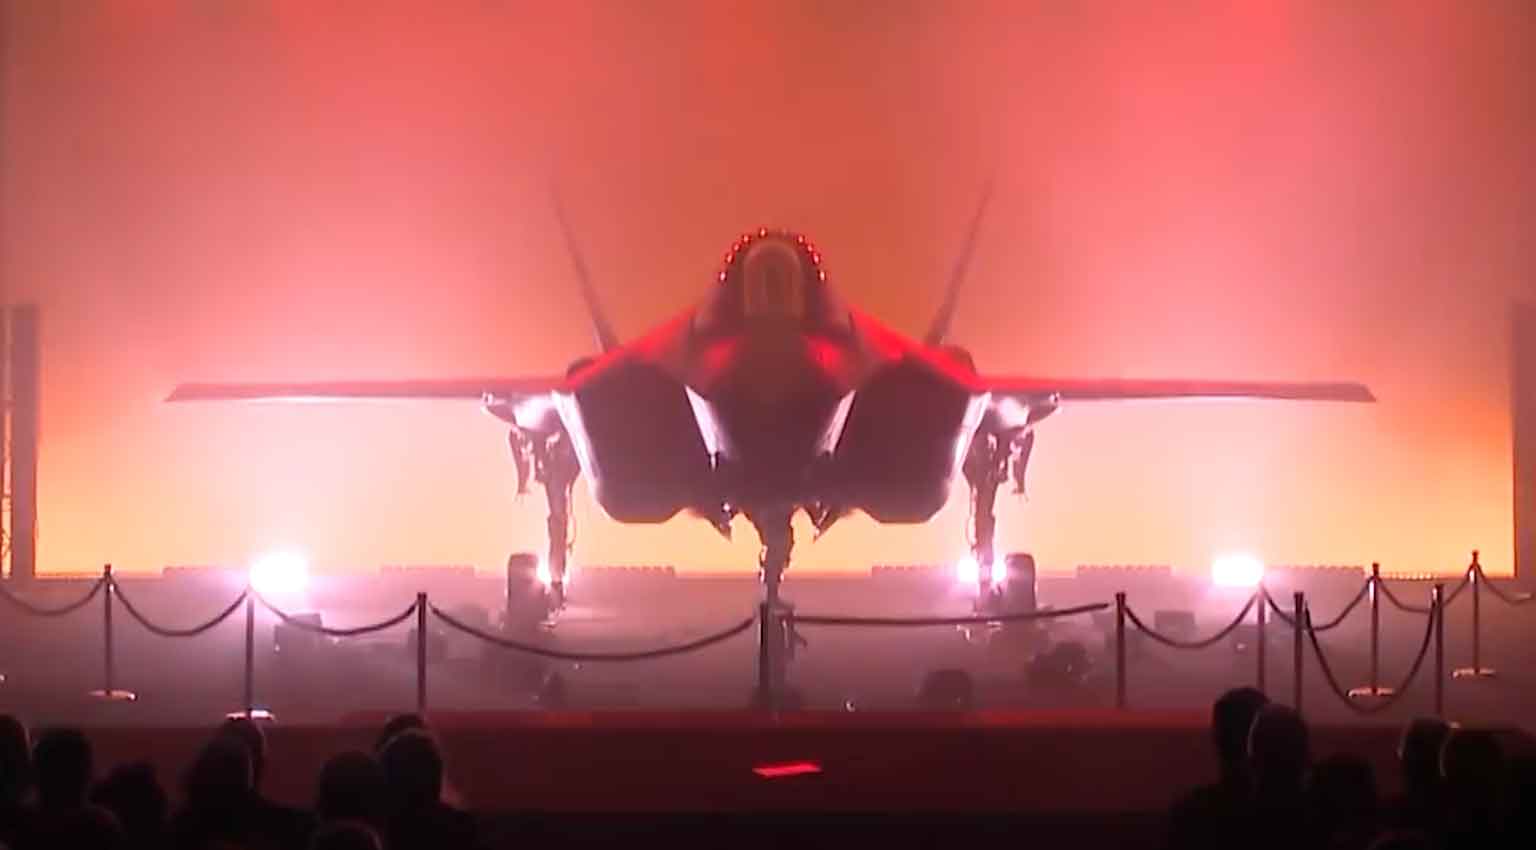 Wideo: Pierwszy F-35A Belgii zaprezentowany przez Lockheed Martin. Zdjęcie i wideo: Instagram @lockheedmartin